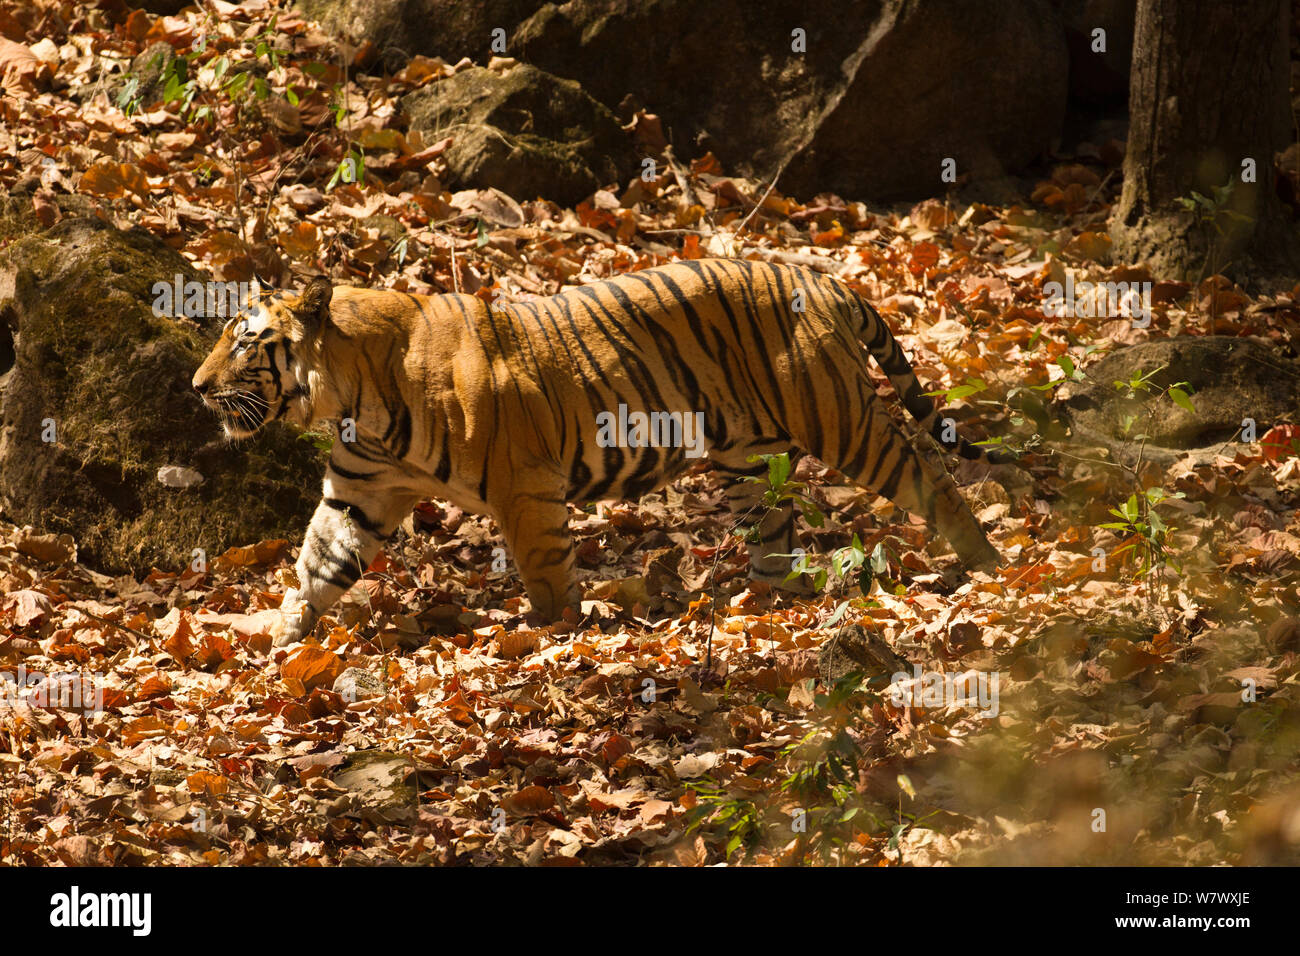 Tigre de Bengala (Panthera tigris tigris) caminar, Parque Nacional Bandhavgarh, Madhya Pradesh, India. Especies en peligro de extinción. Foto de stock